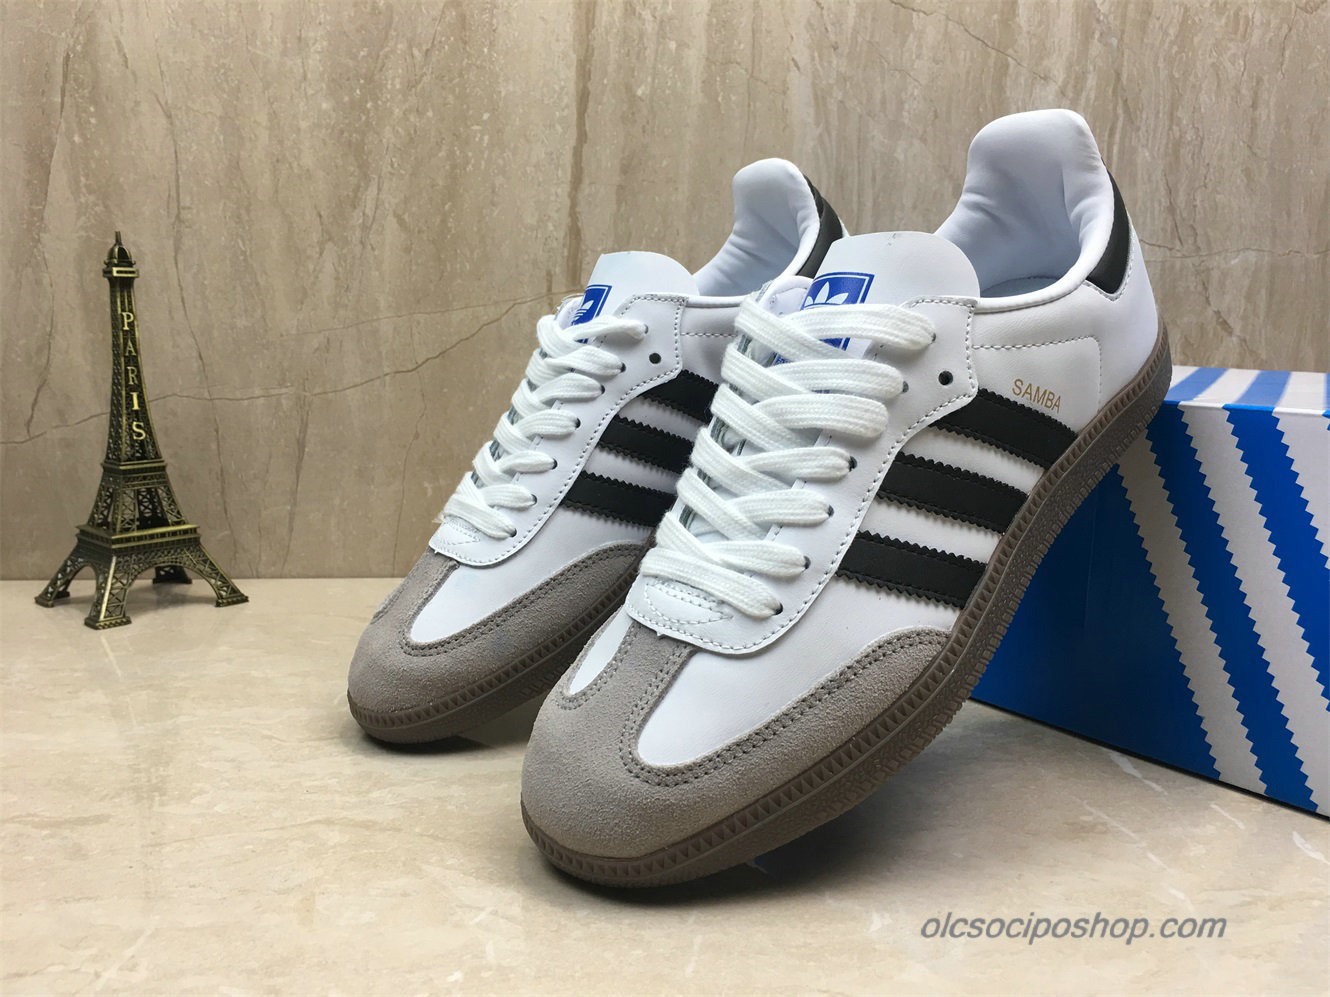 Adidas Samba OG Fehér/Fekete/Szürke Cipők (B75806)